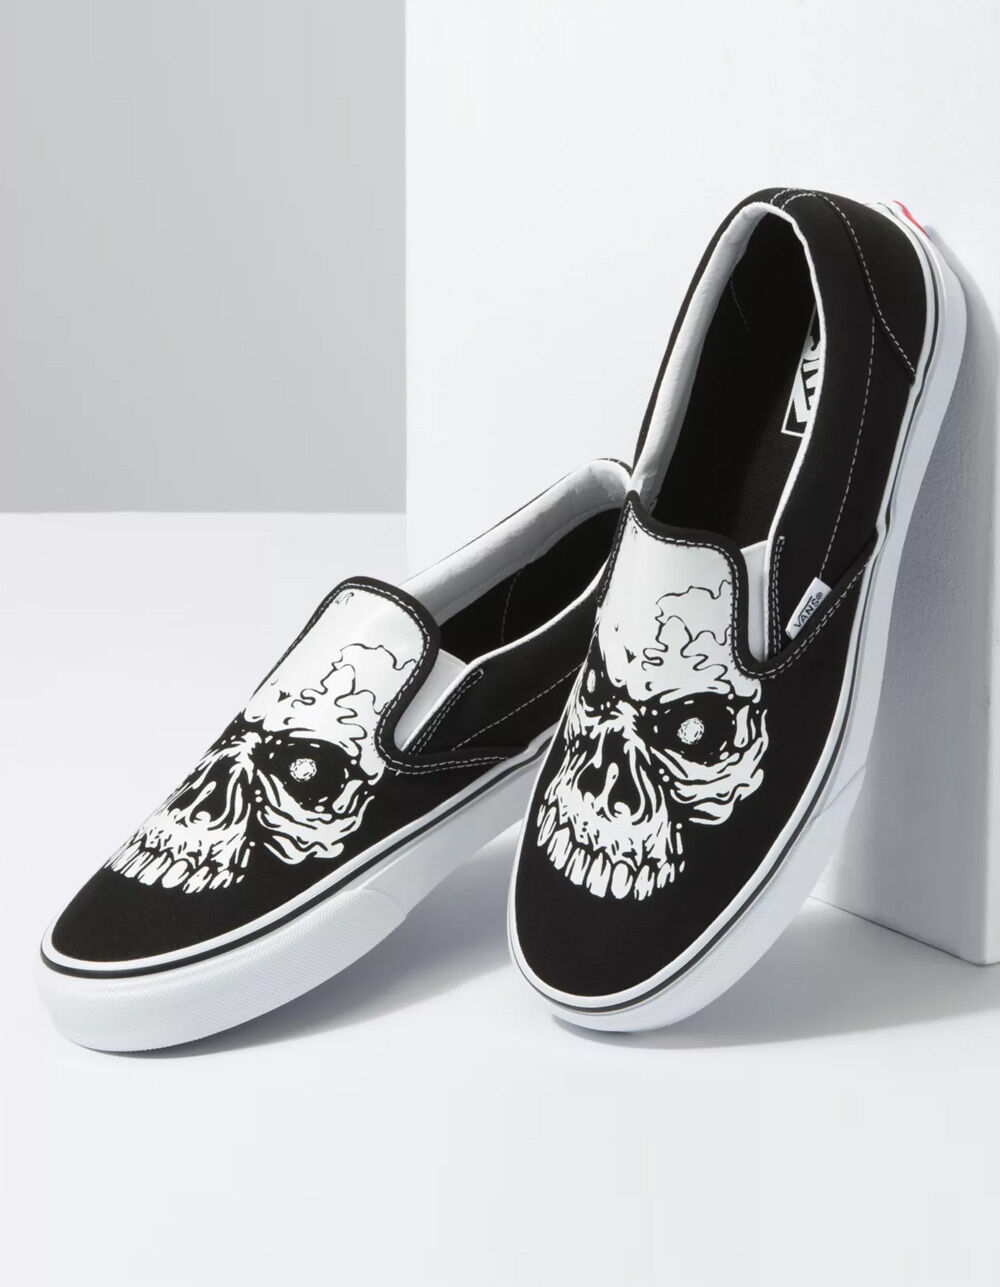 Vans Classic Slip On Wireframe Skulls Black Men's Skate Shoes Size 10 